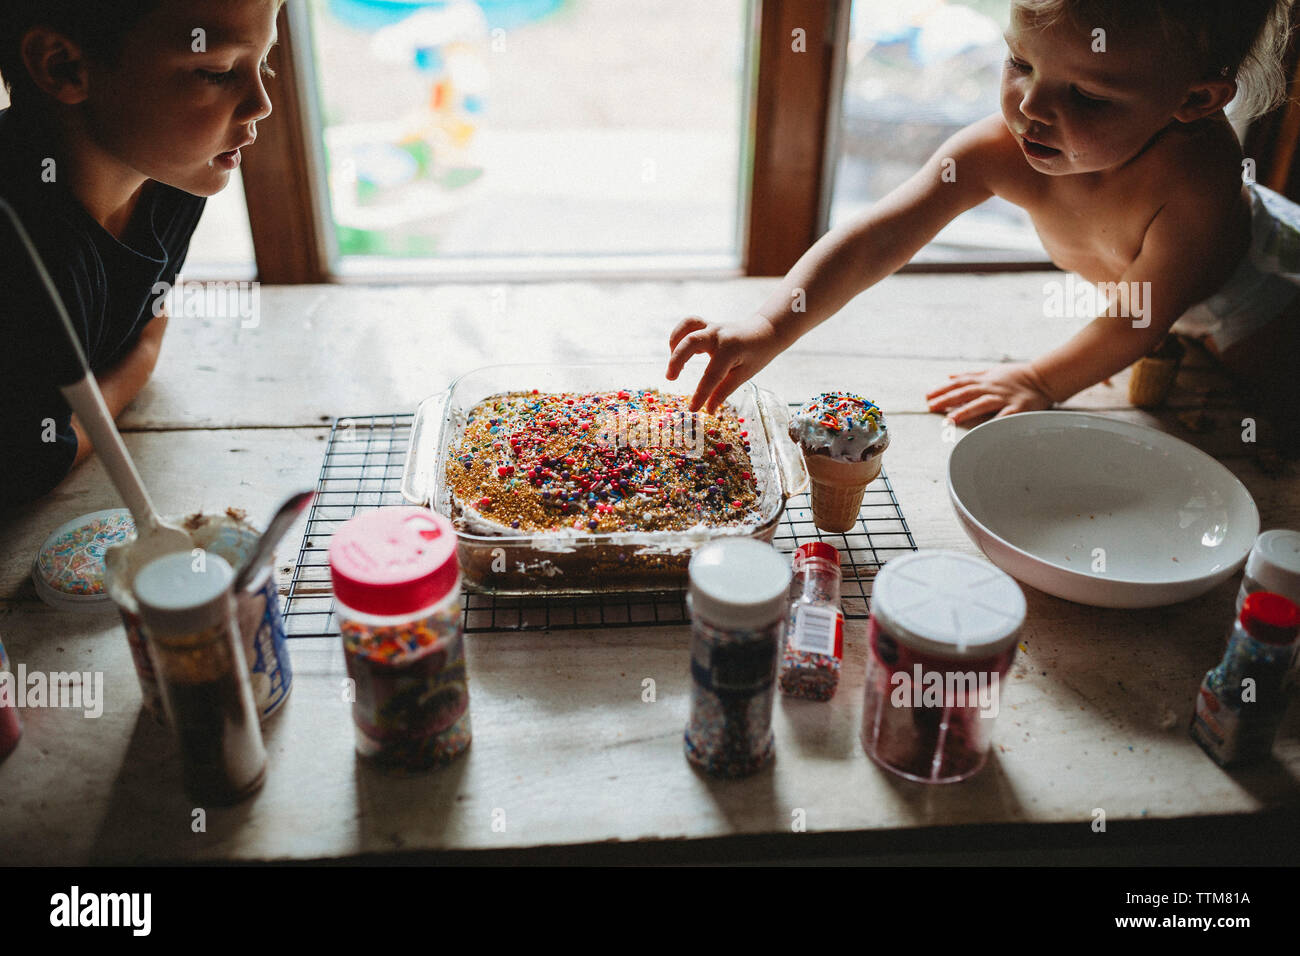 Two siblings sneaking sprinkles off of freshly baked cake treat Stock Photo